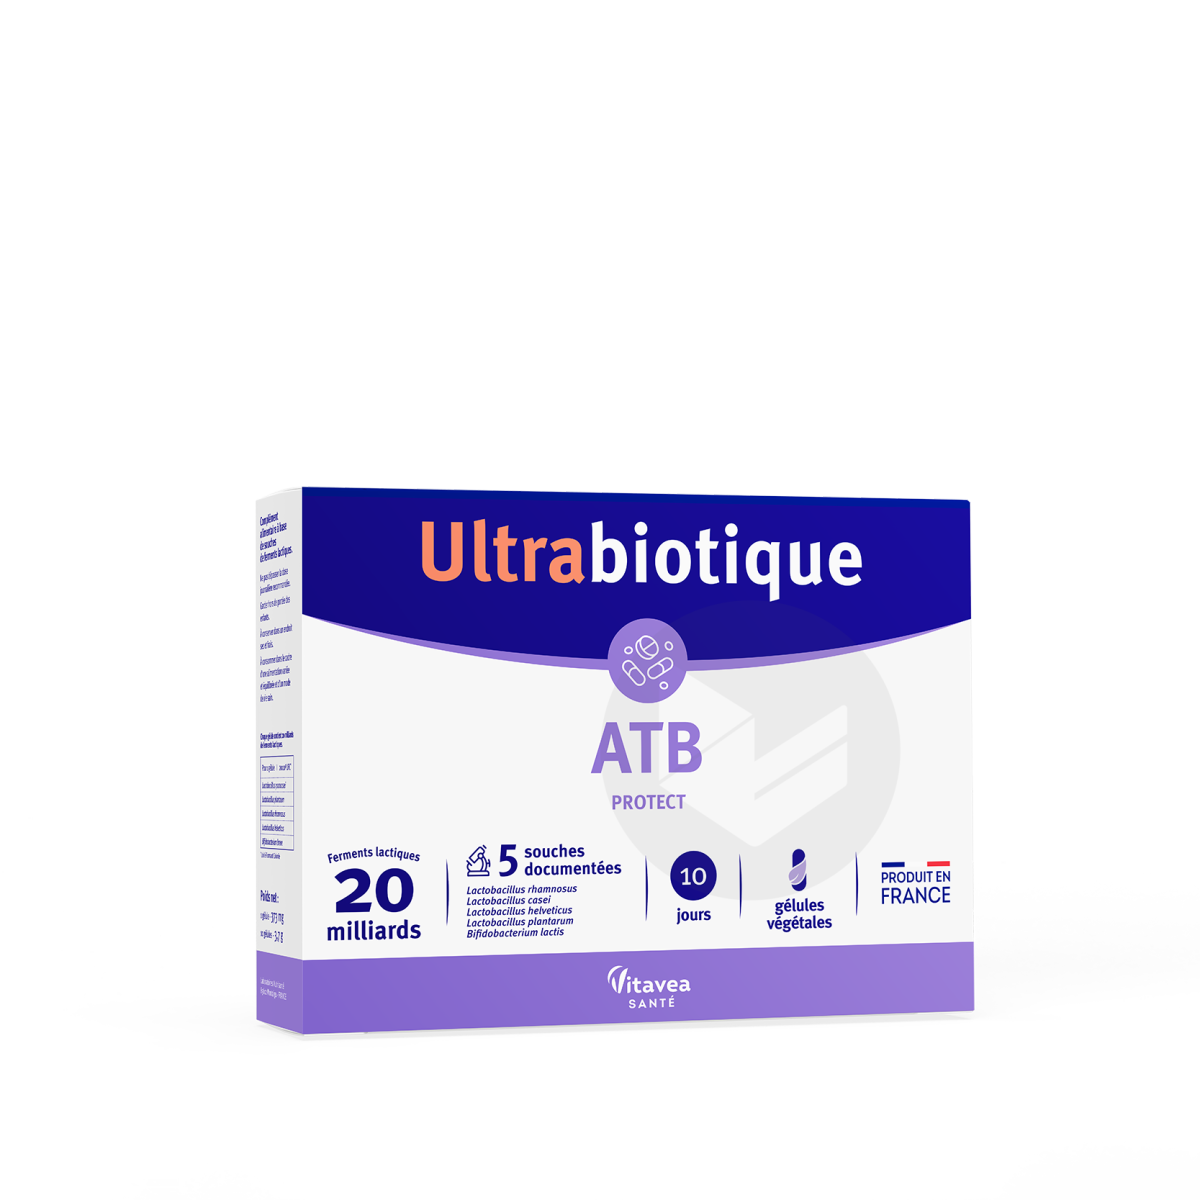 Ultrabiotique ATB 10 gélules